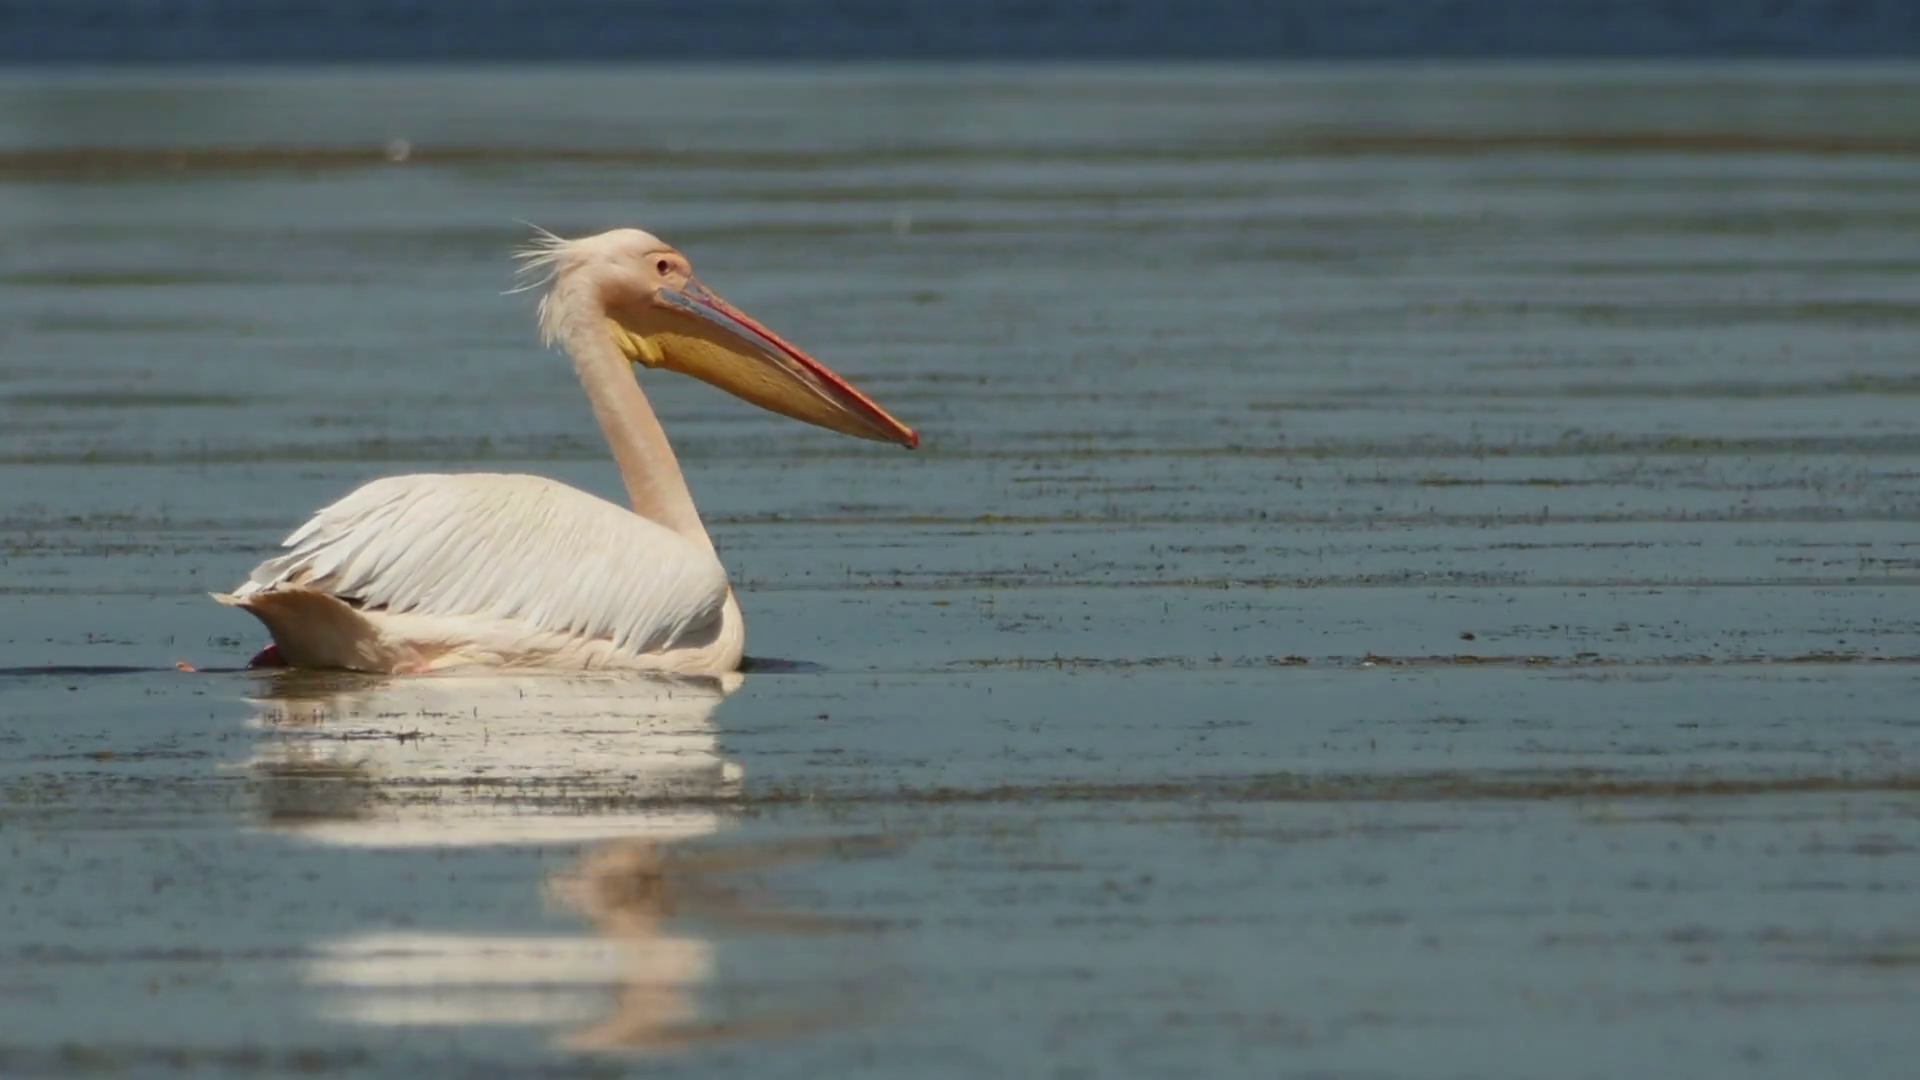 Dalmatian pelican (Pelecanus crispus) swimming on water in Danube ...